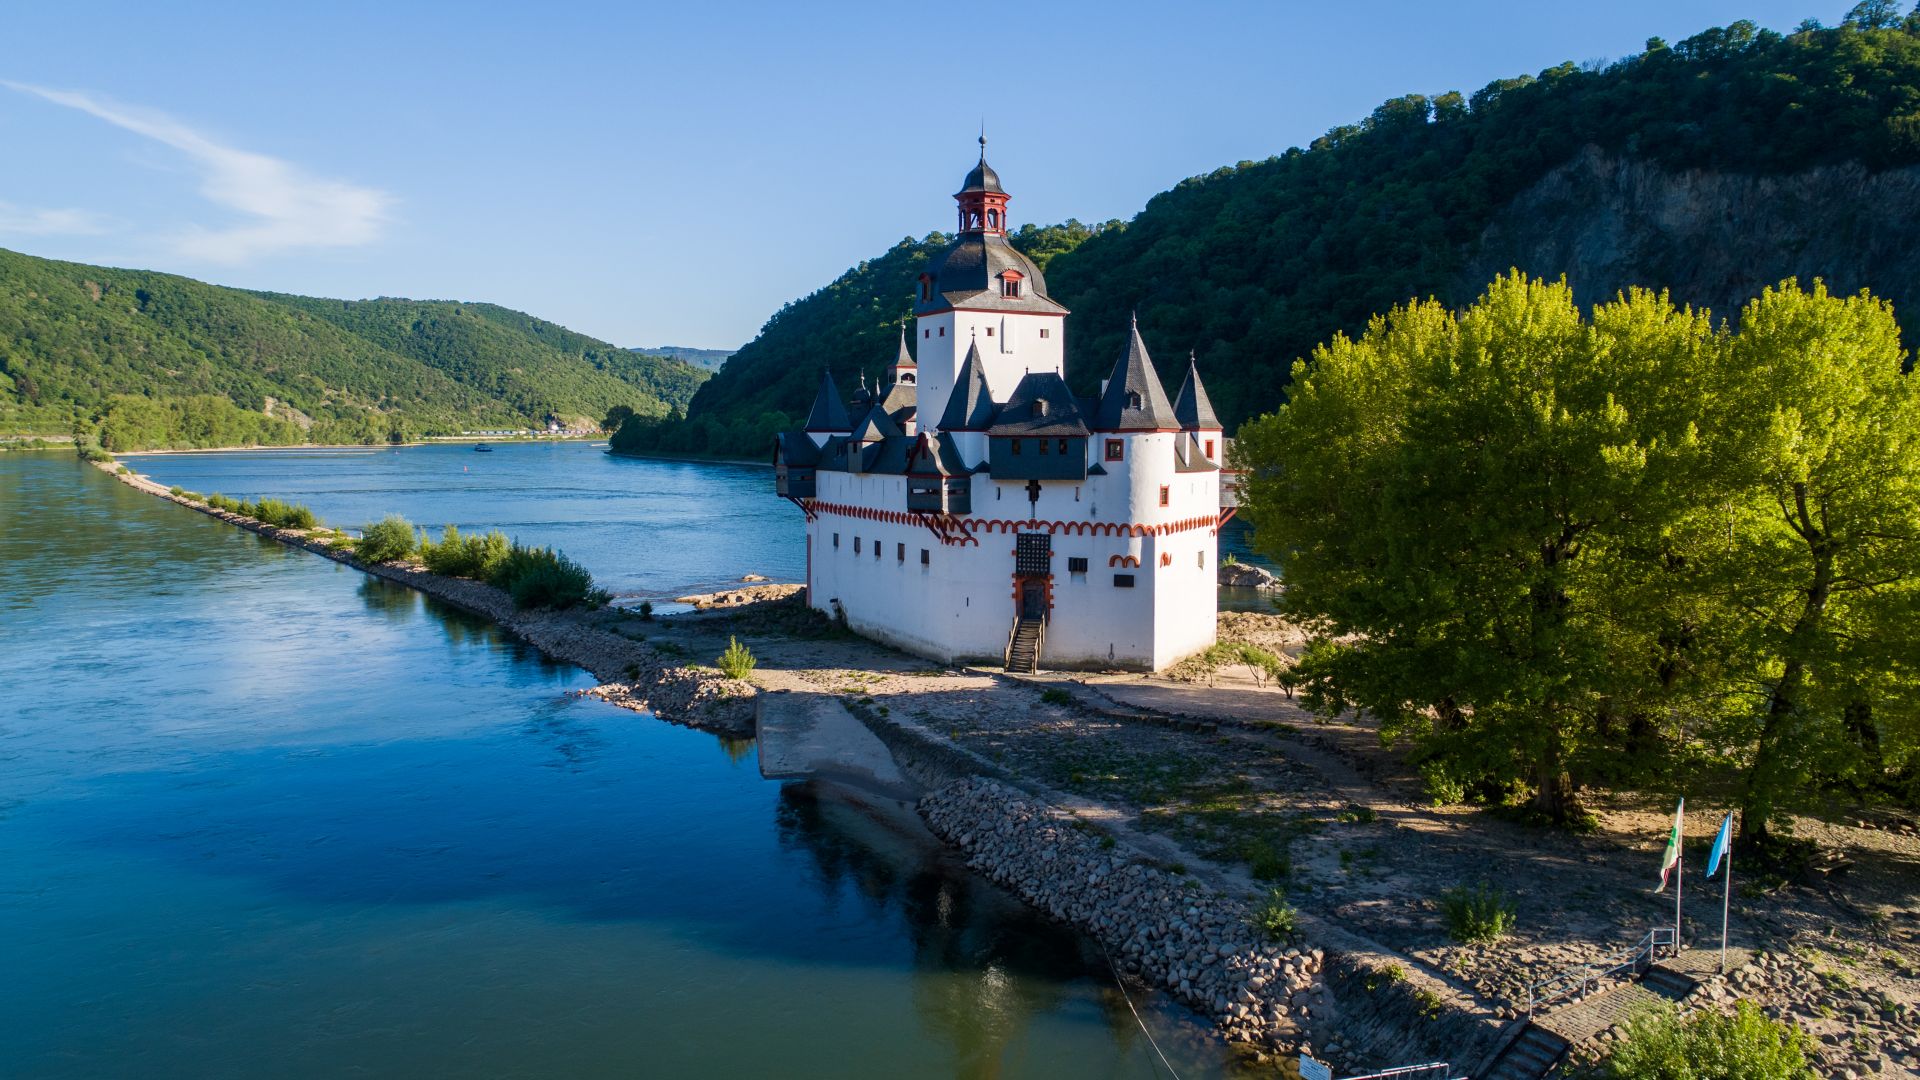 Kaub: Burg Pfalzgrafenstein auf der Insel Falkenau im Rhein, Route der Rheinromantik, Oberes Mittelrheintal